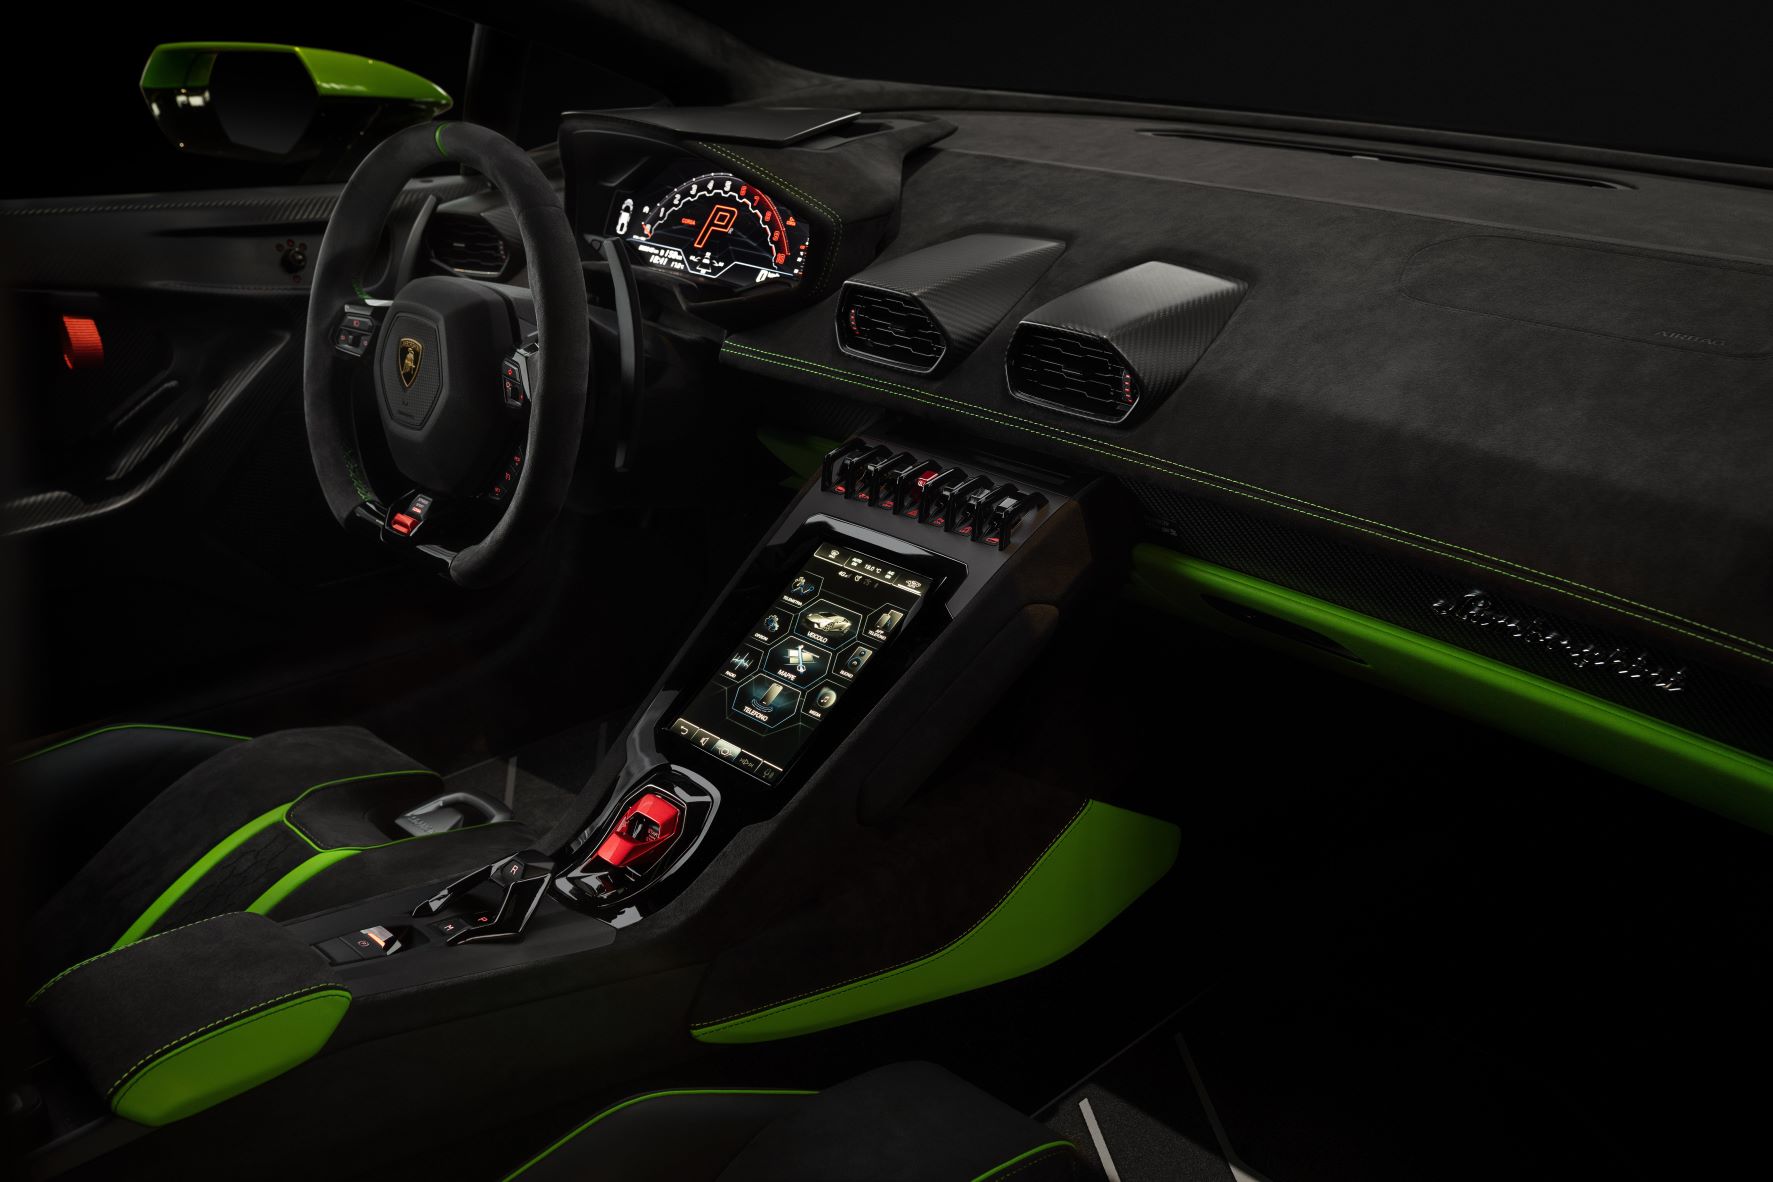 Interior of the Lamborghini Huracan Tecnica